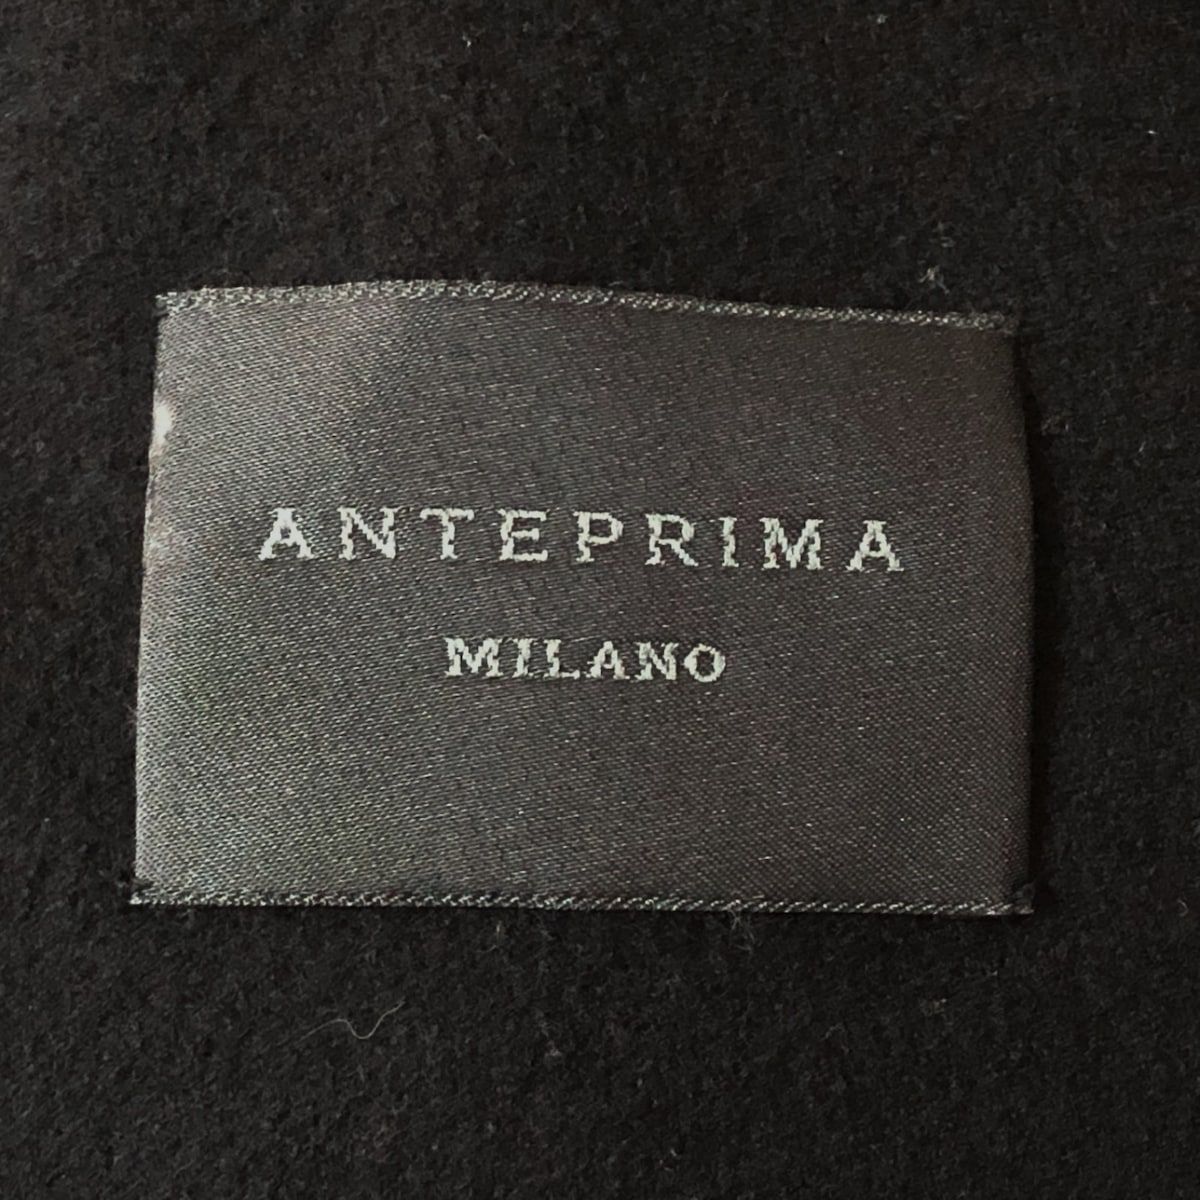 ANTEPRIMA(アンテプリマ) コート サイズ40 M レディース - 黒 長袖/カシミア混/ロング丈/春/秋